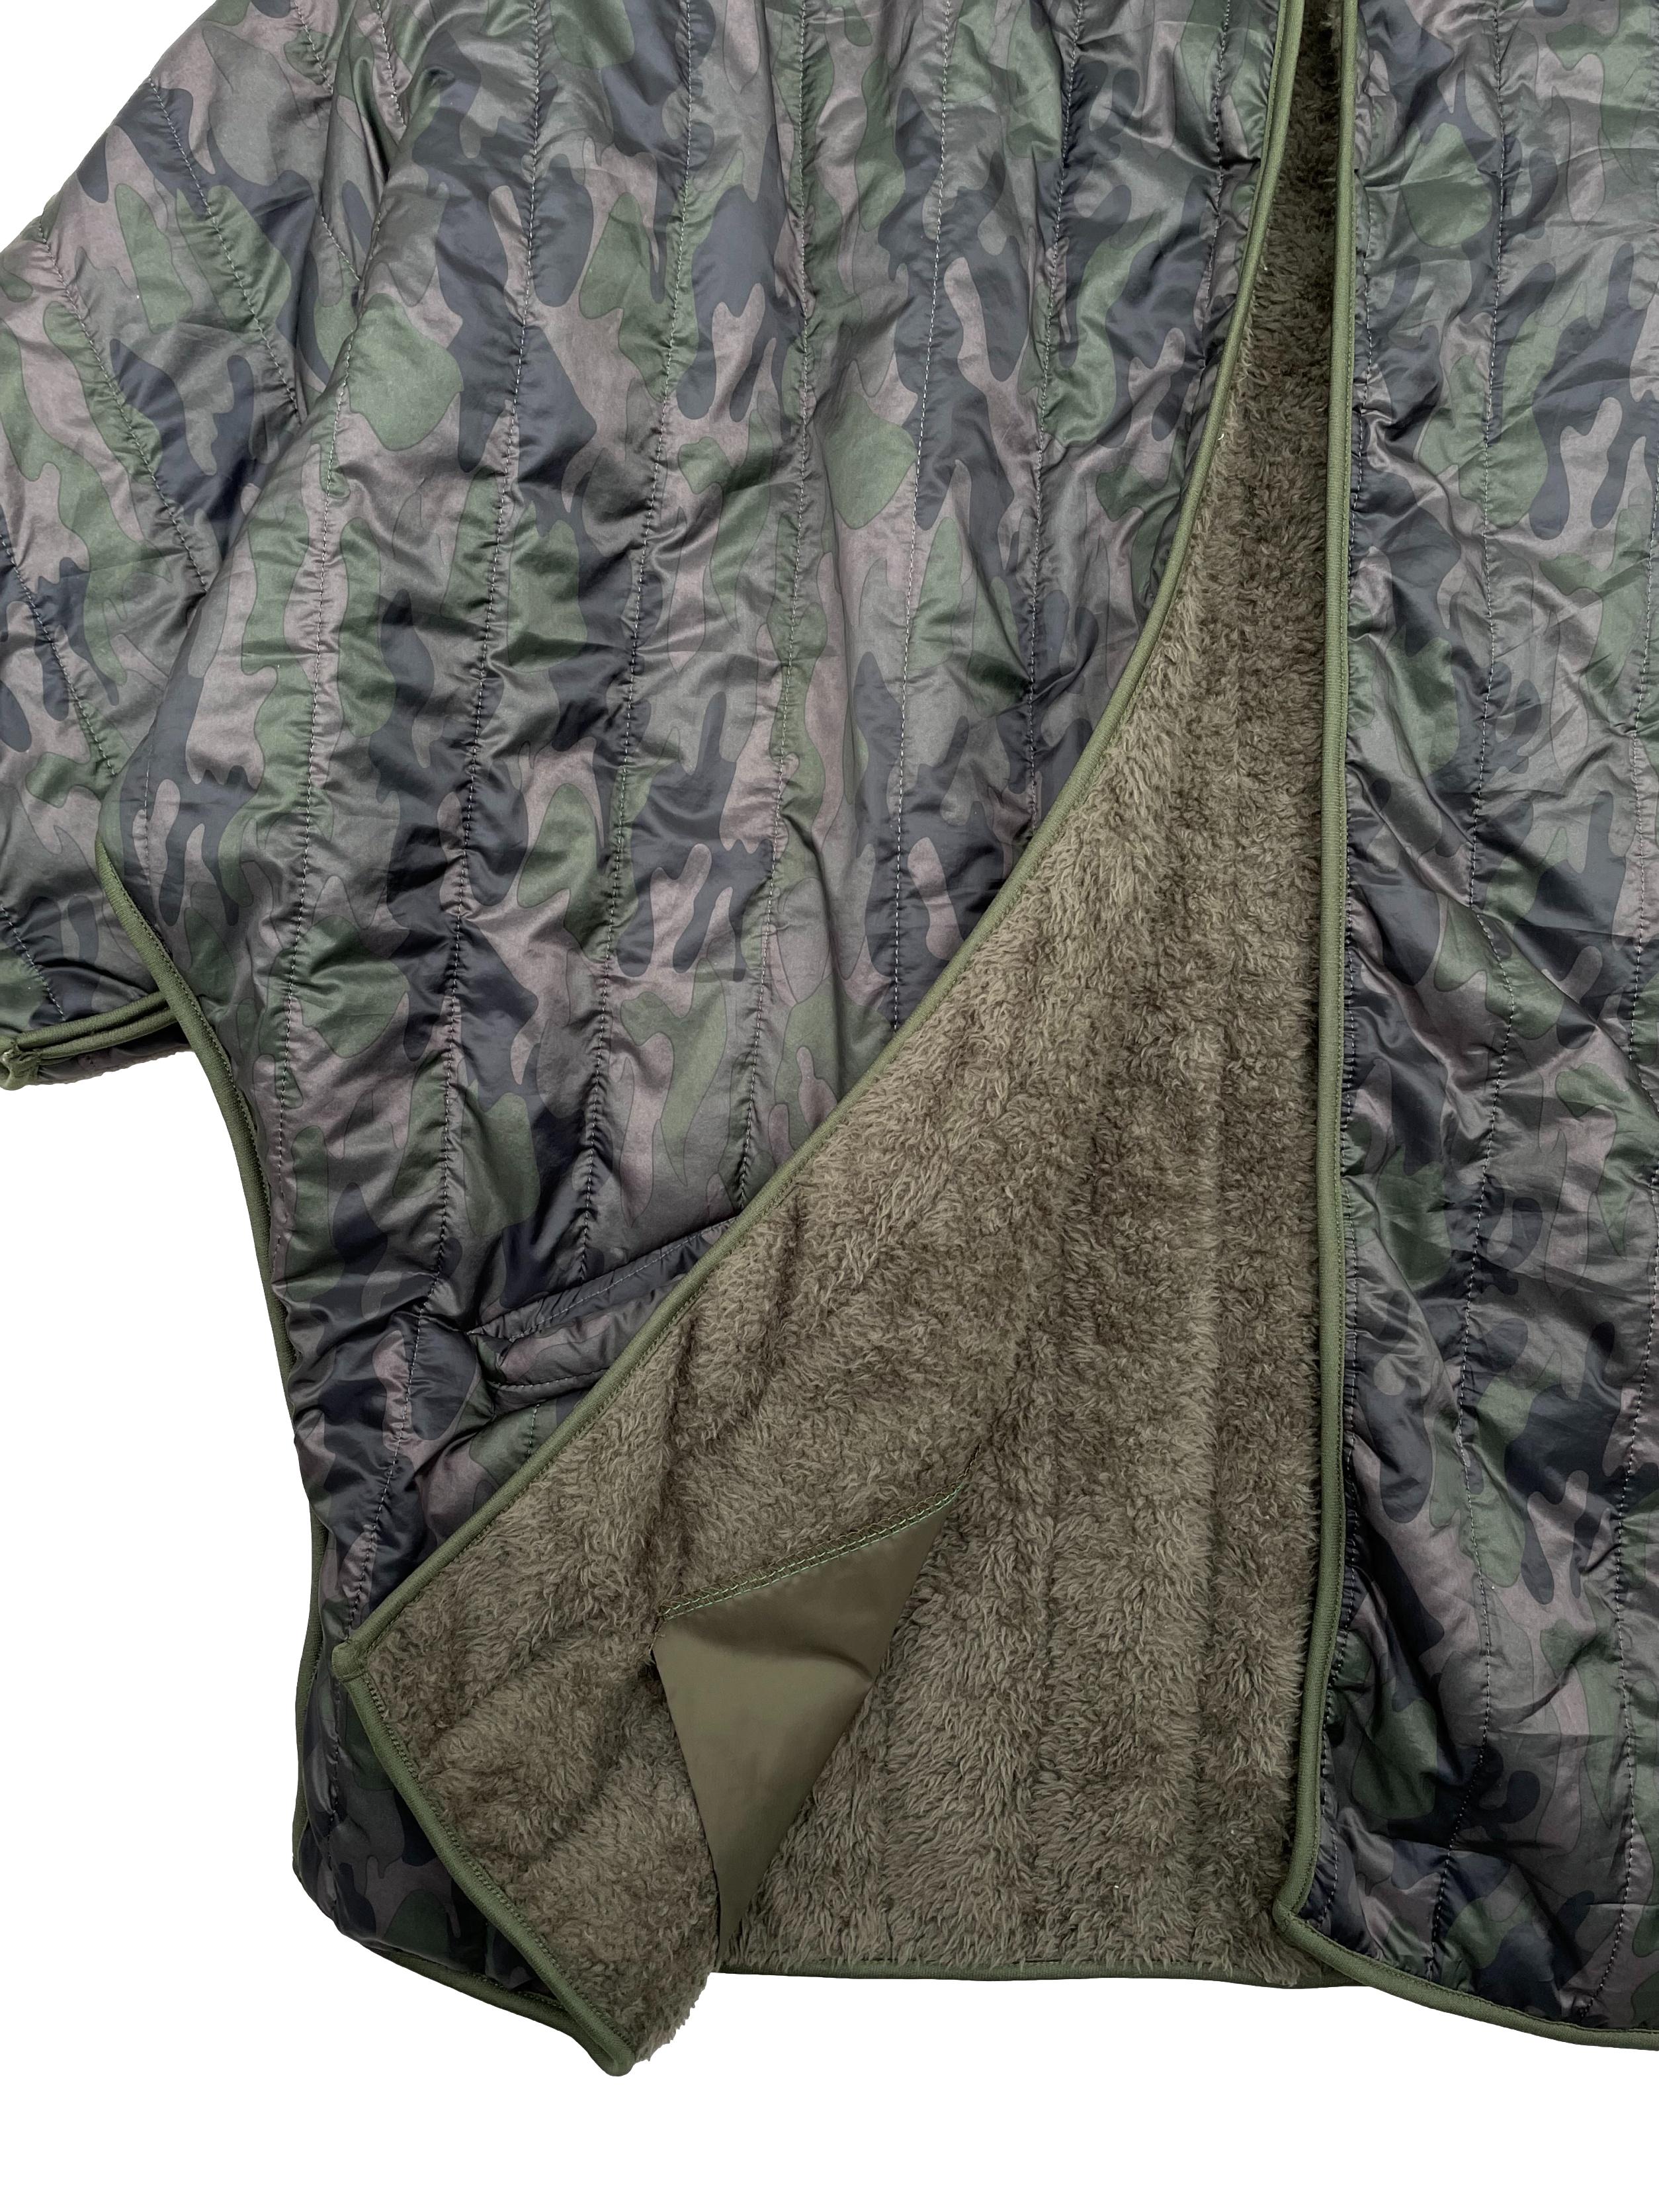 Casaca estilo impermeable estampado militar con forro de peluche, corte oversized, cuello alto y bolsillos laterales. Ancho 120cm Largo 75cm